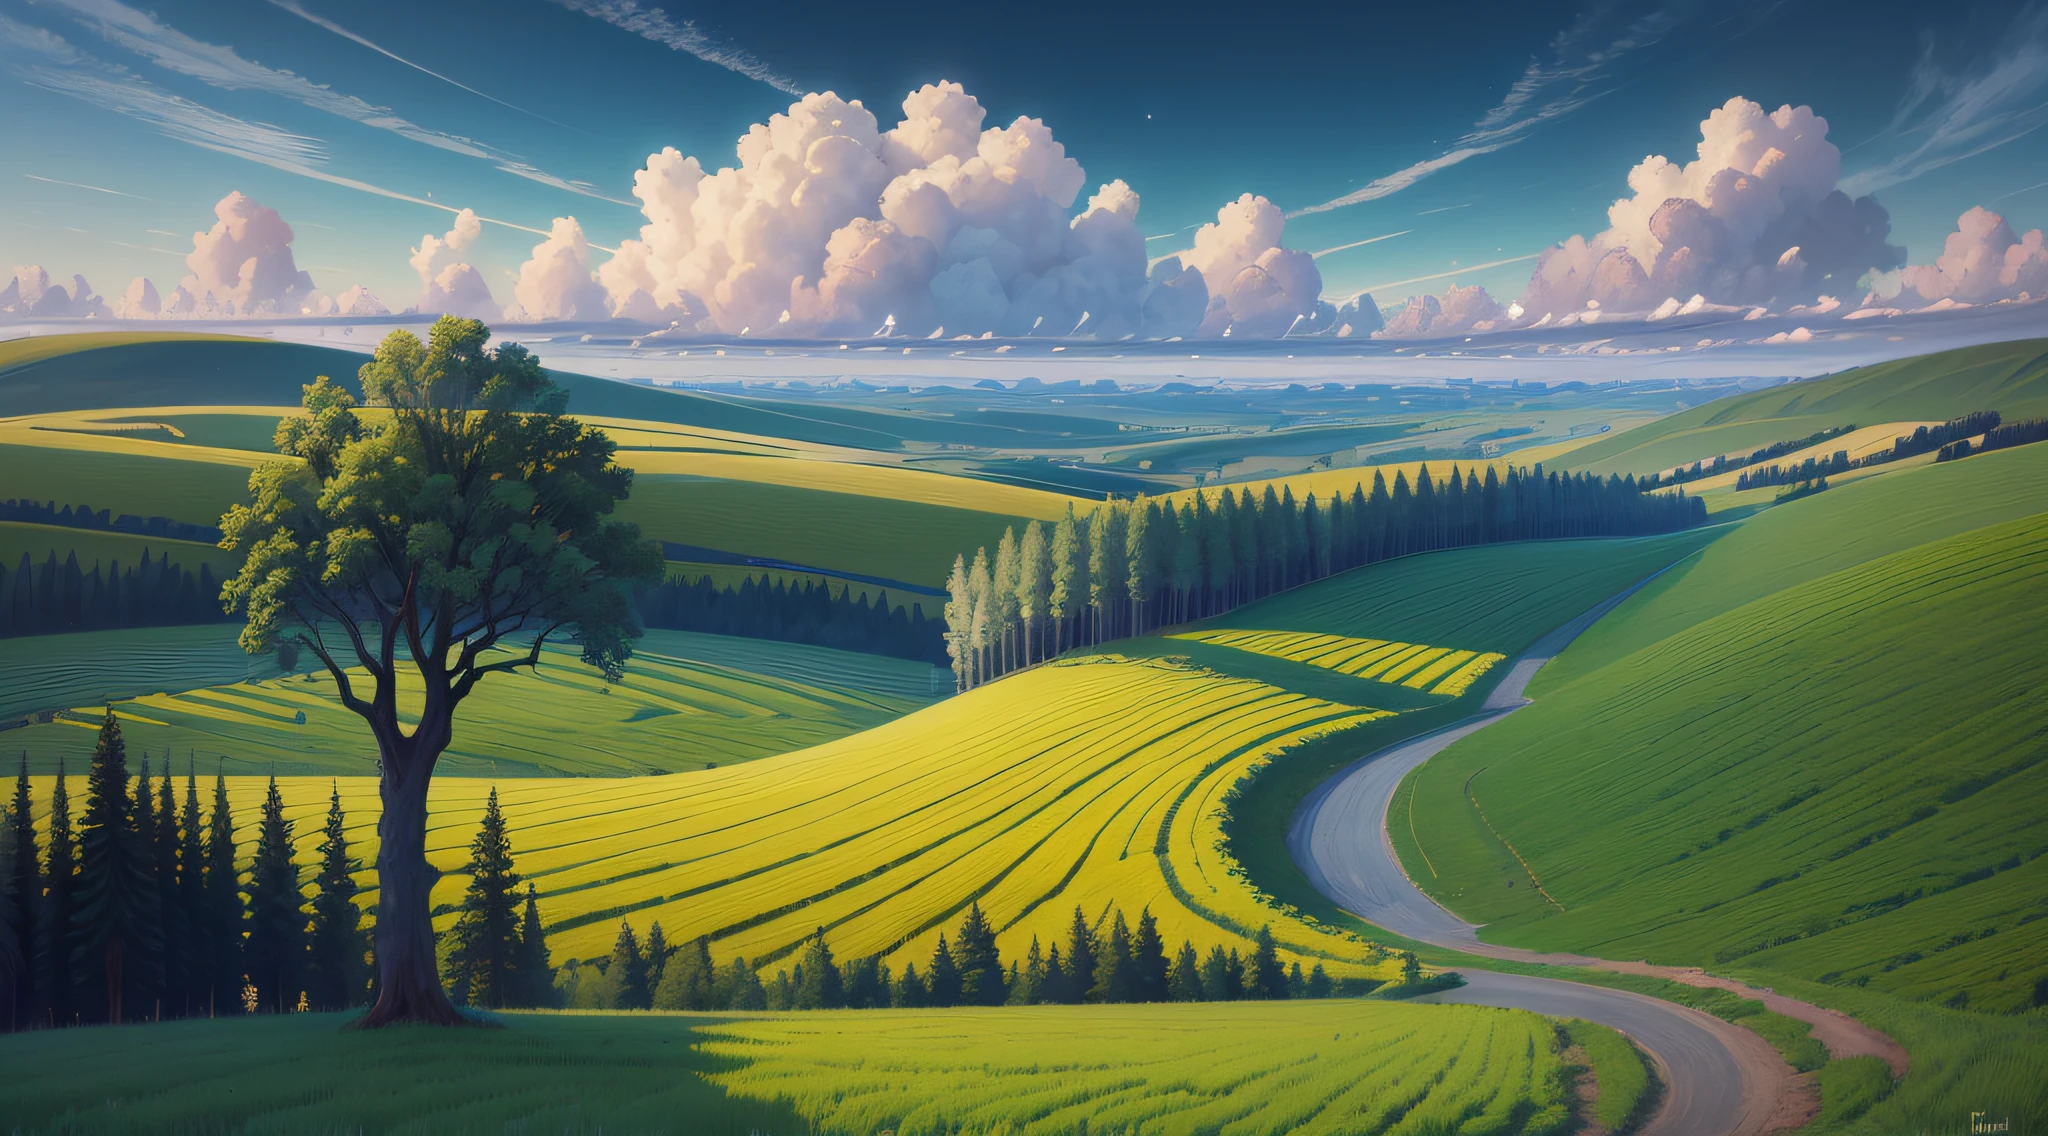 一幅画有几棵树和天空的田野, 伊戈尔·基里卢克, 美丽的油画, inspired by 伊戈尔·基里卢克, 超现实主义风景, 美丽的风景, 安德烈·里亚博夫切夫, 安德烈·埃西奥诺夫, 俄罗斯风景, 格热戈日·鲁特科夫斯基, 伊利亚·奥斯特罗霍夫, 超现实主义风景 --auto --s2